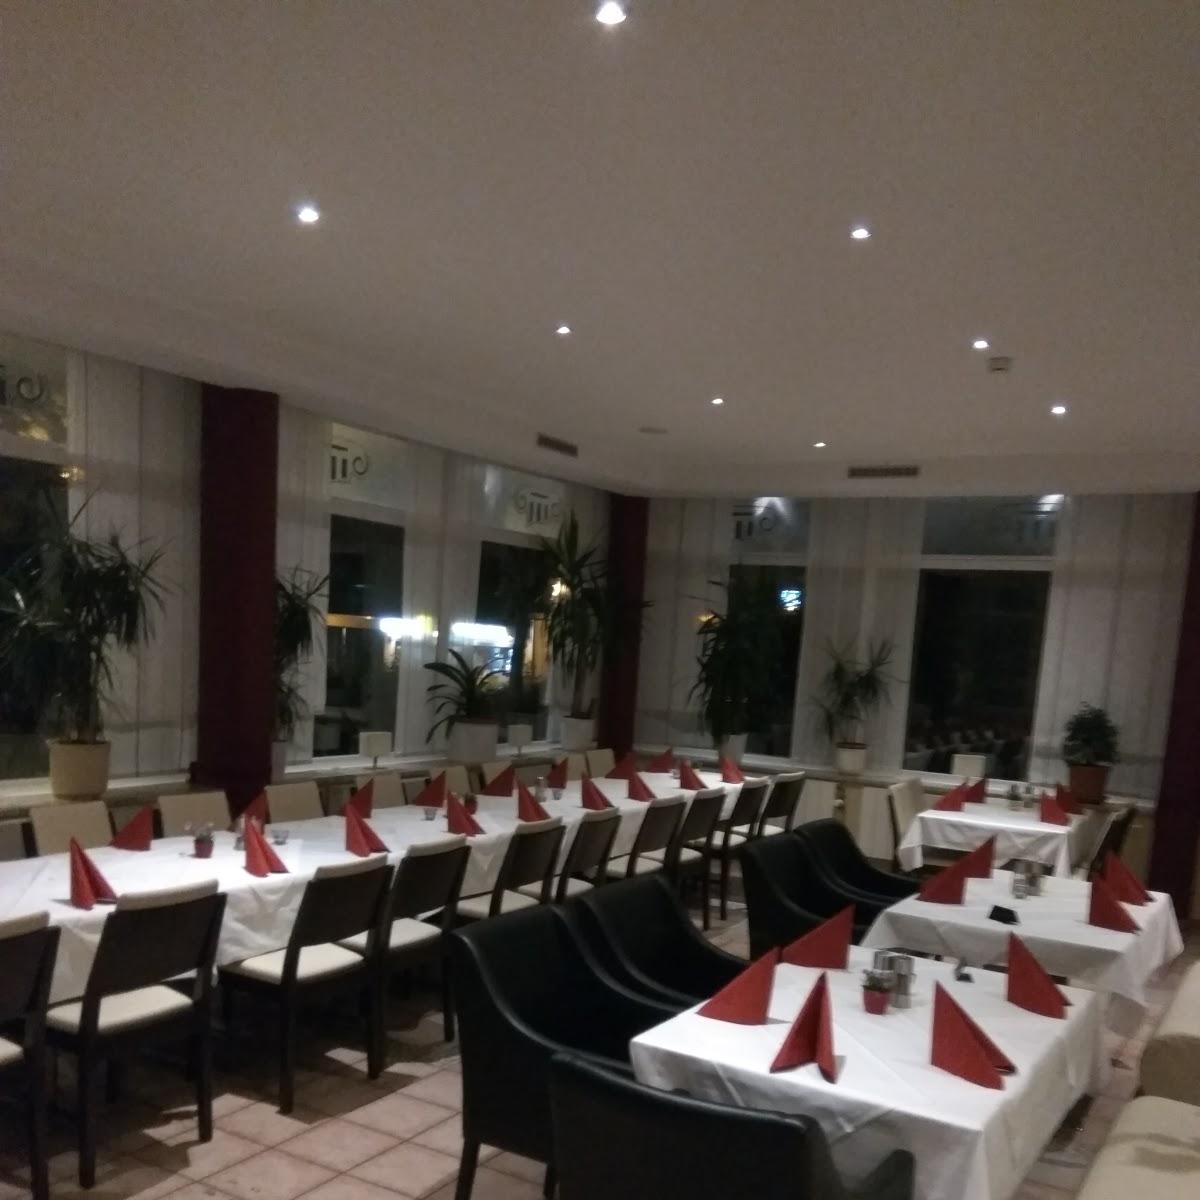 Restaurant "Restaurant Bacchus" in Wolfsburg